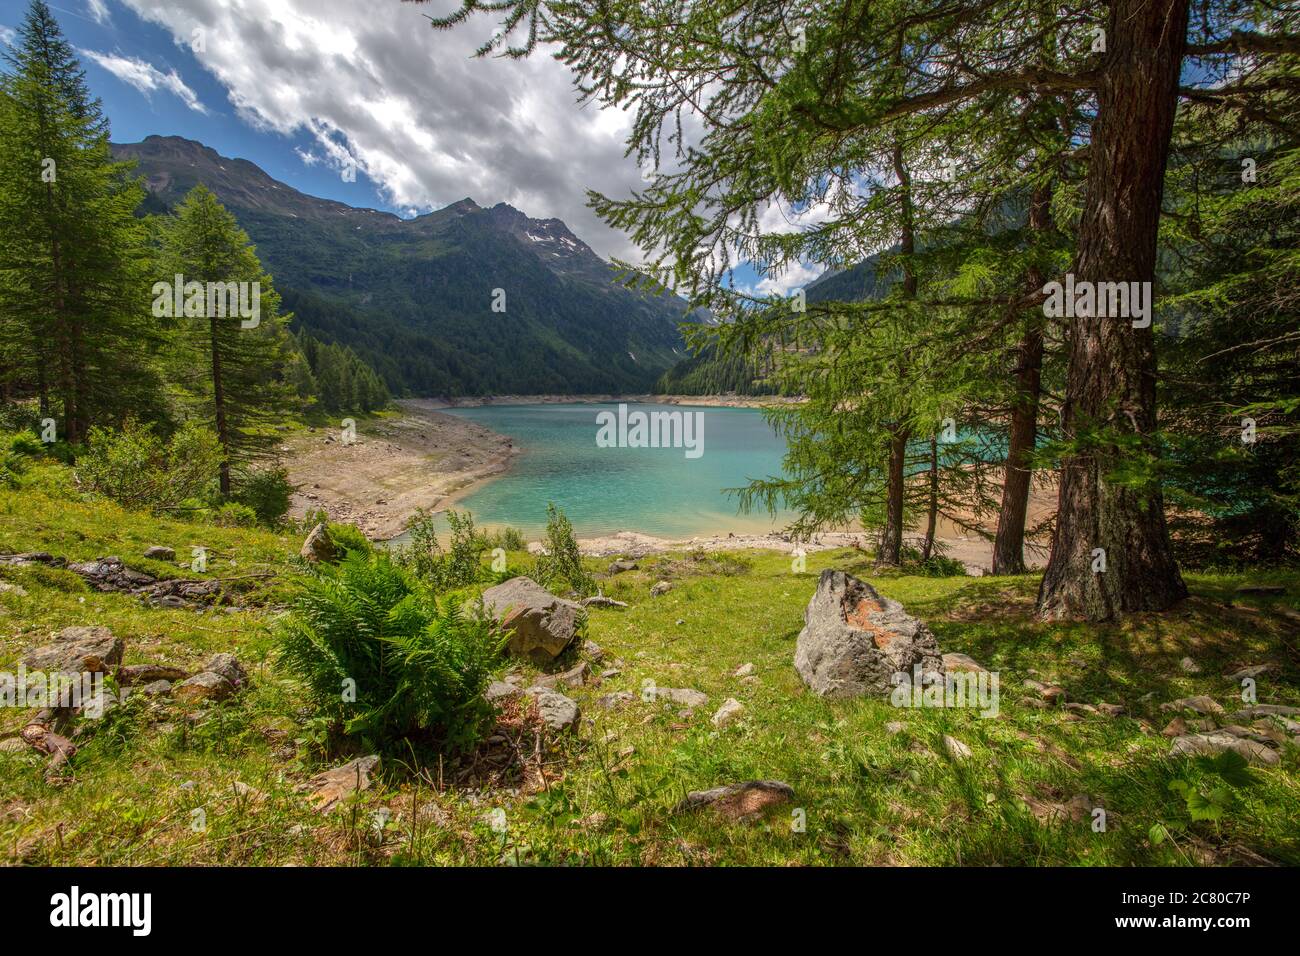 Una foto bautfiul di 'lago Palù', Pejo, Trentino, Italia Foto Stock